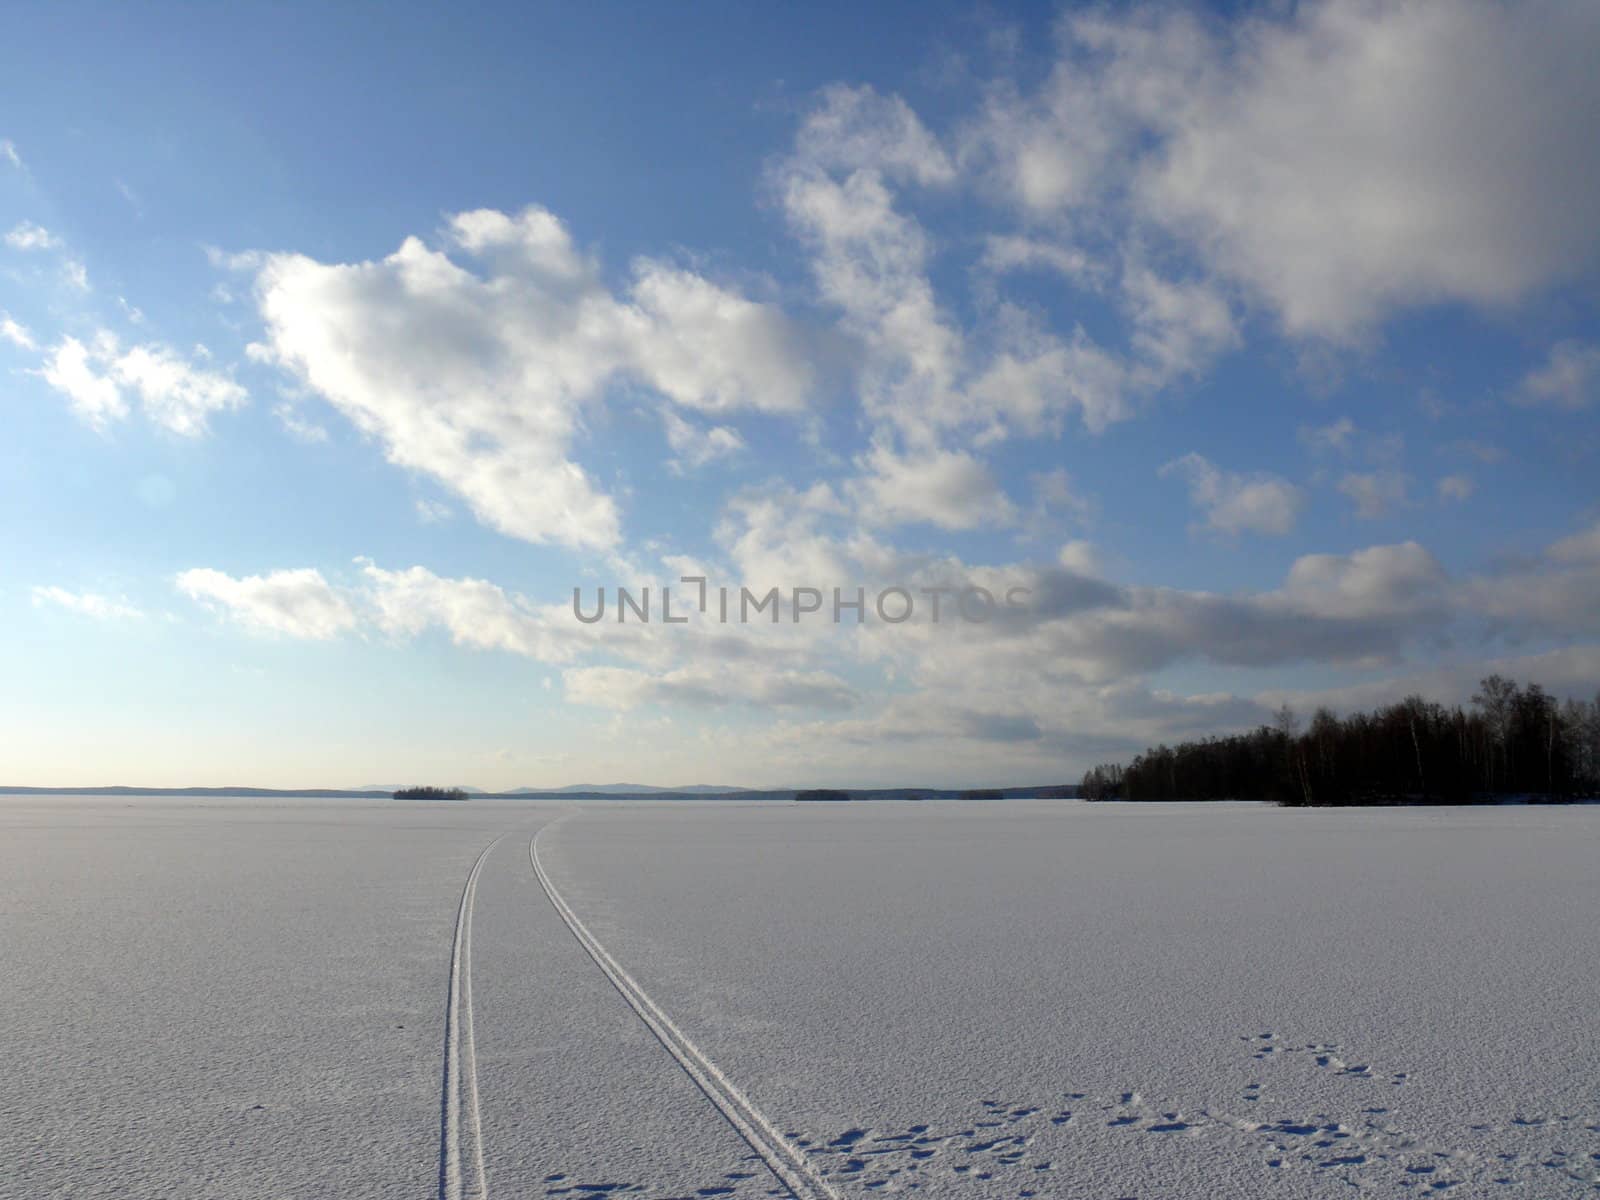 Winter landscape by Stoyanov